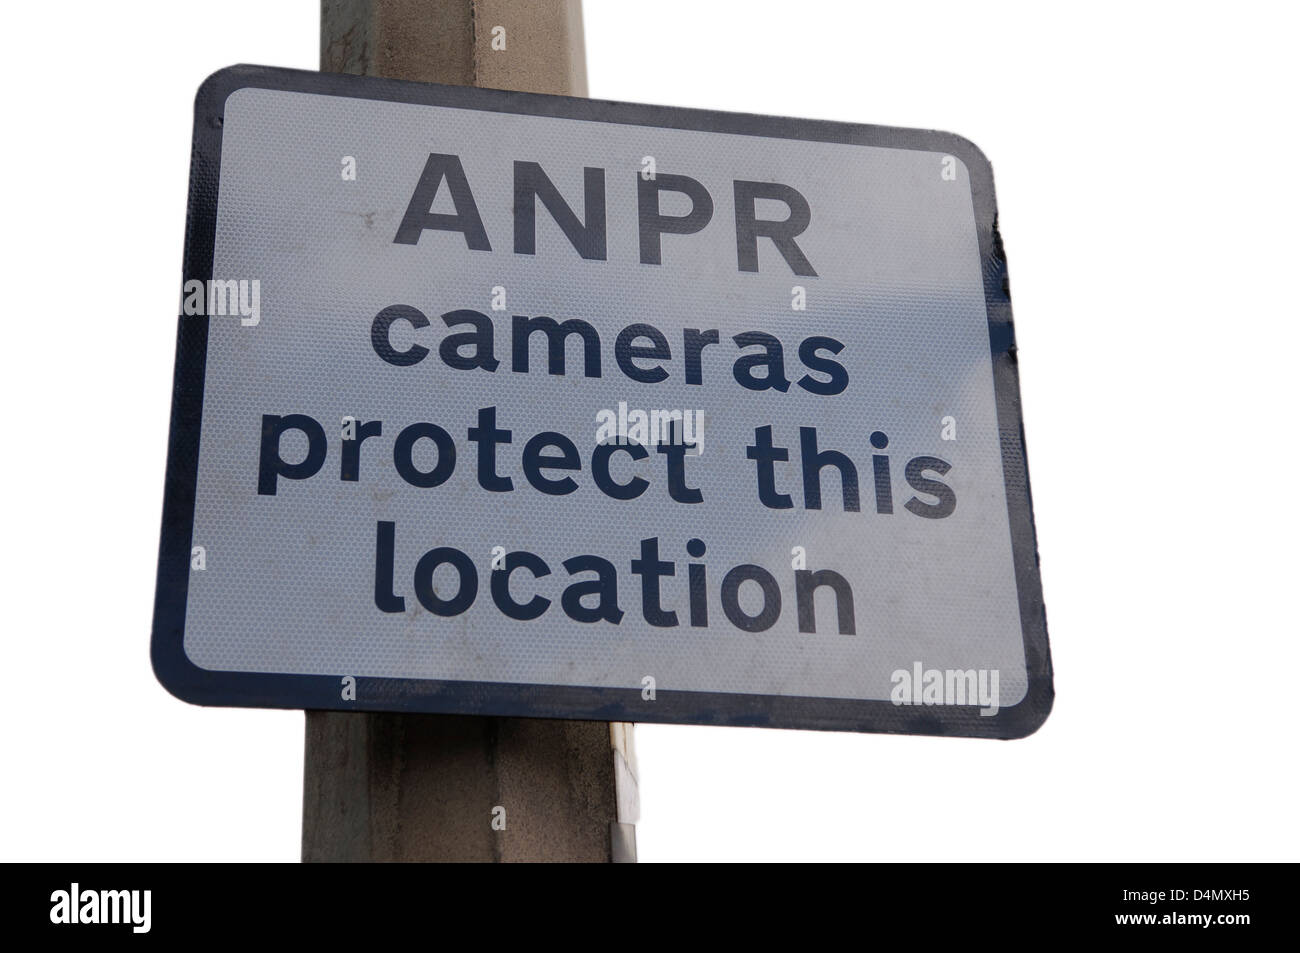 Melden Sie sich in einem Industriegebiet, warnt, dass automatische Anzahl Teller Anerkennung (ANPR) Kameras im Einsatz, um diesen Standort zu schützen sind. Stockfoto